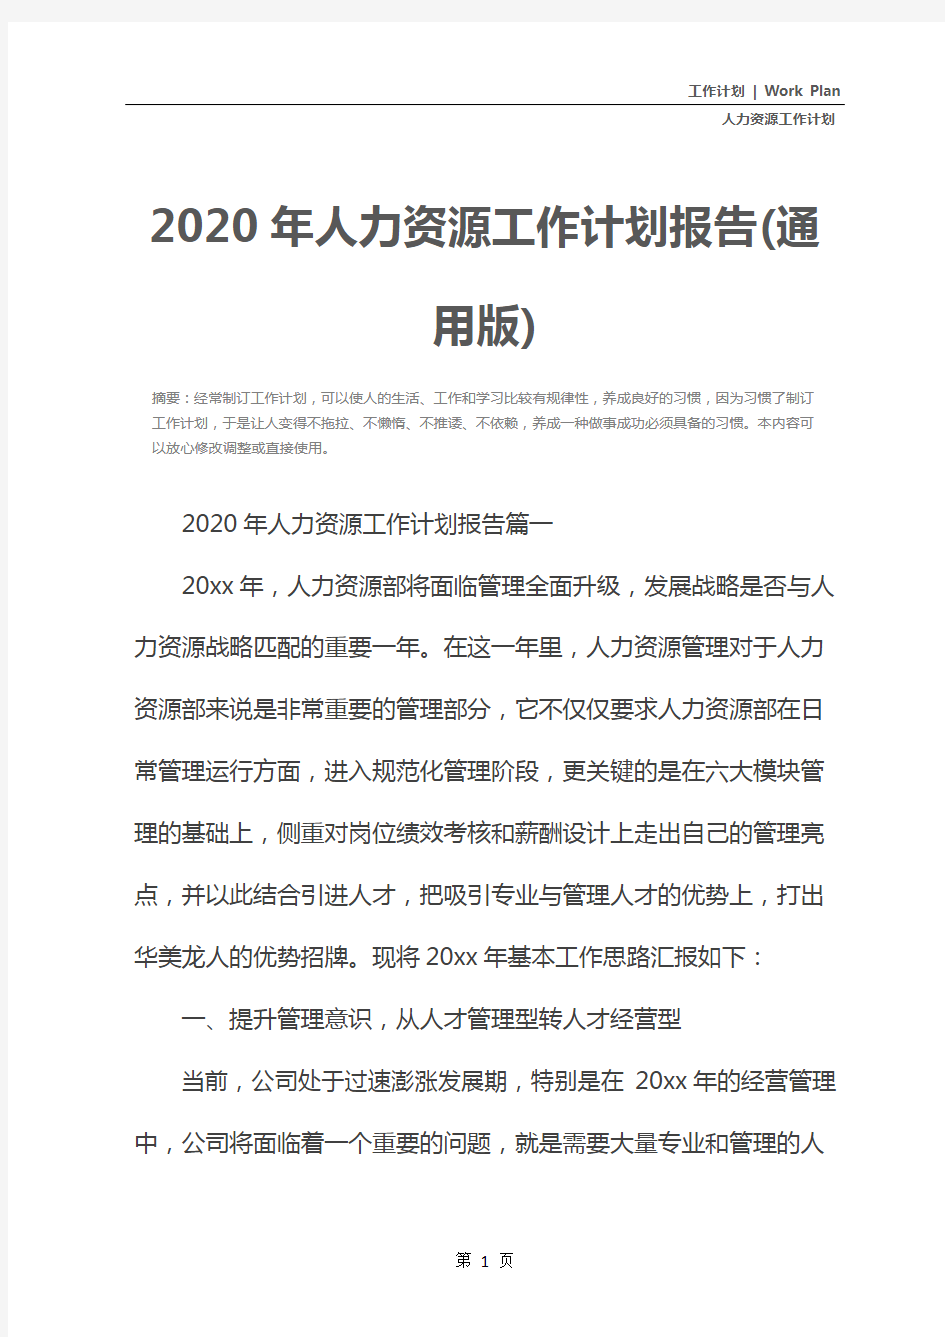 2020年人力资源工作计划报告(通用版)